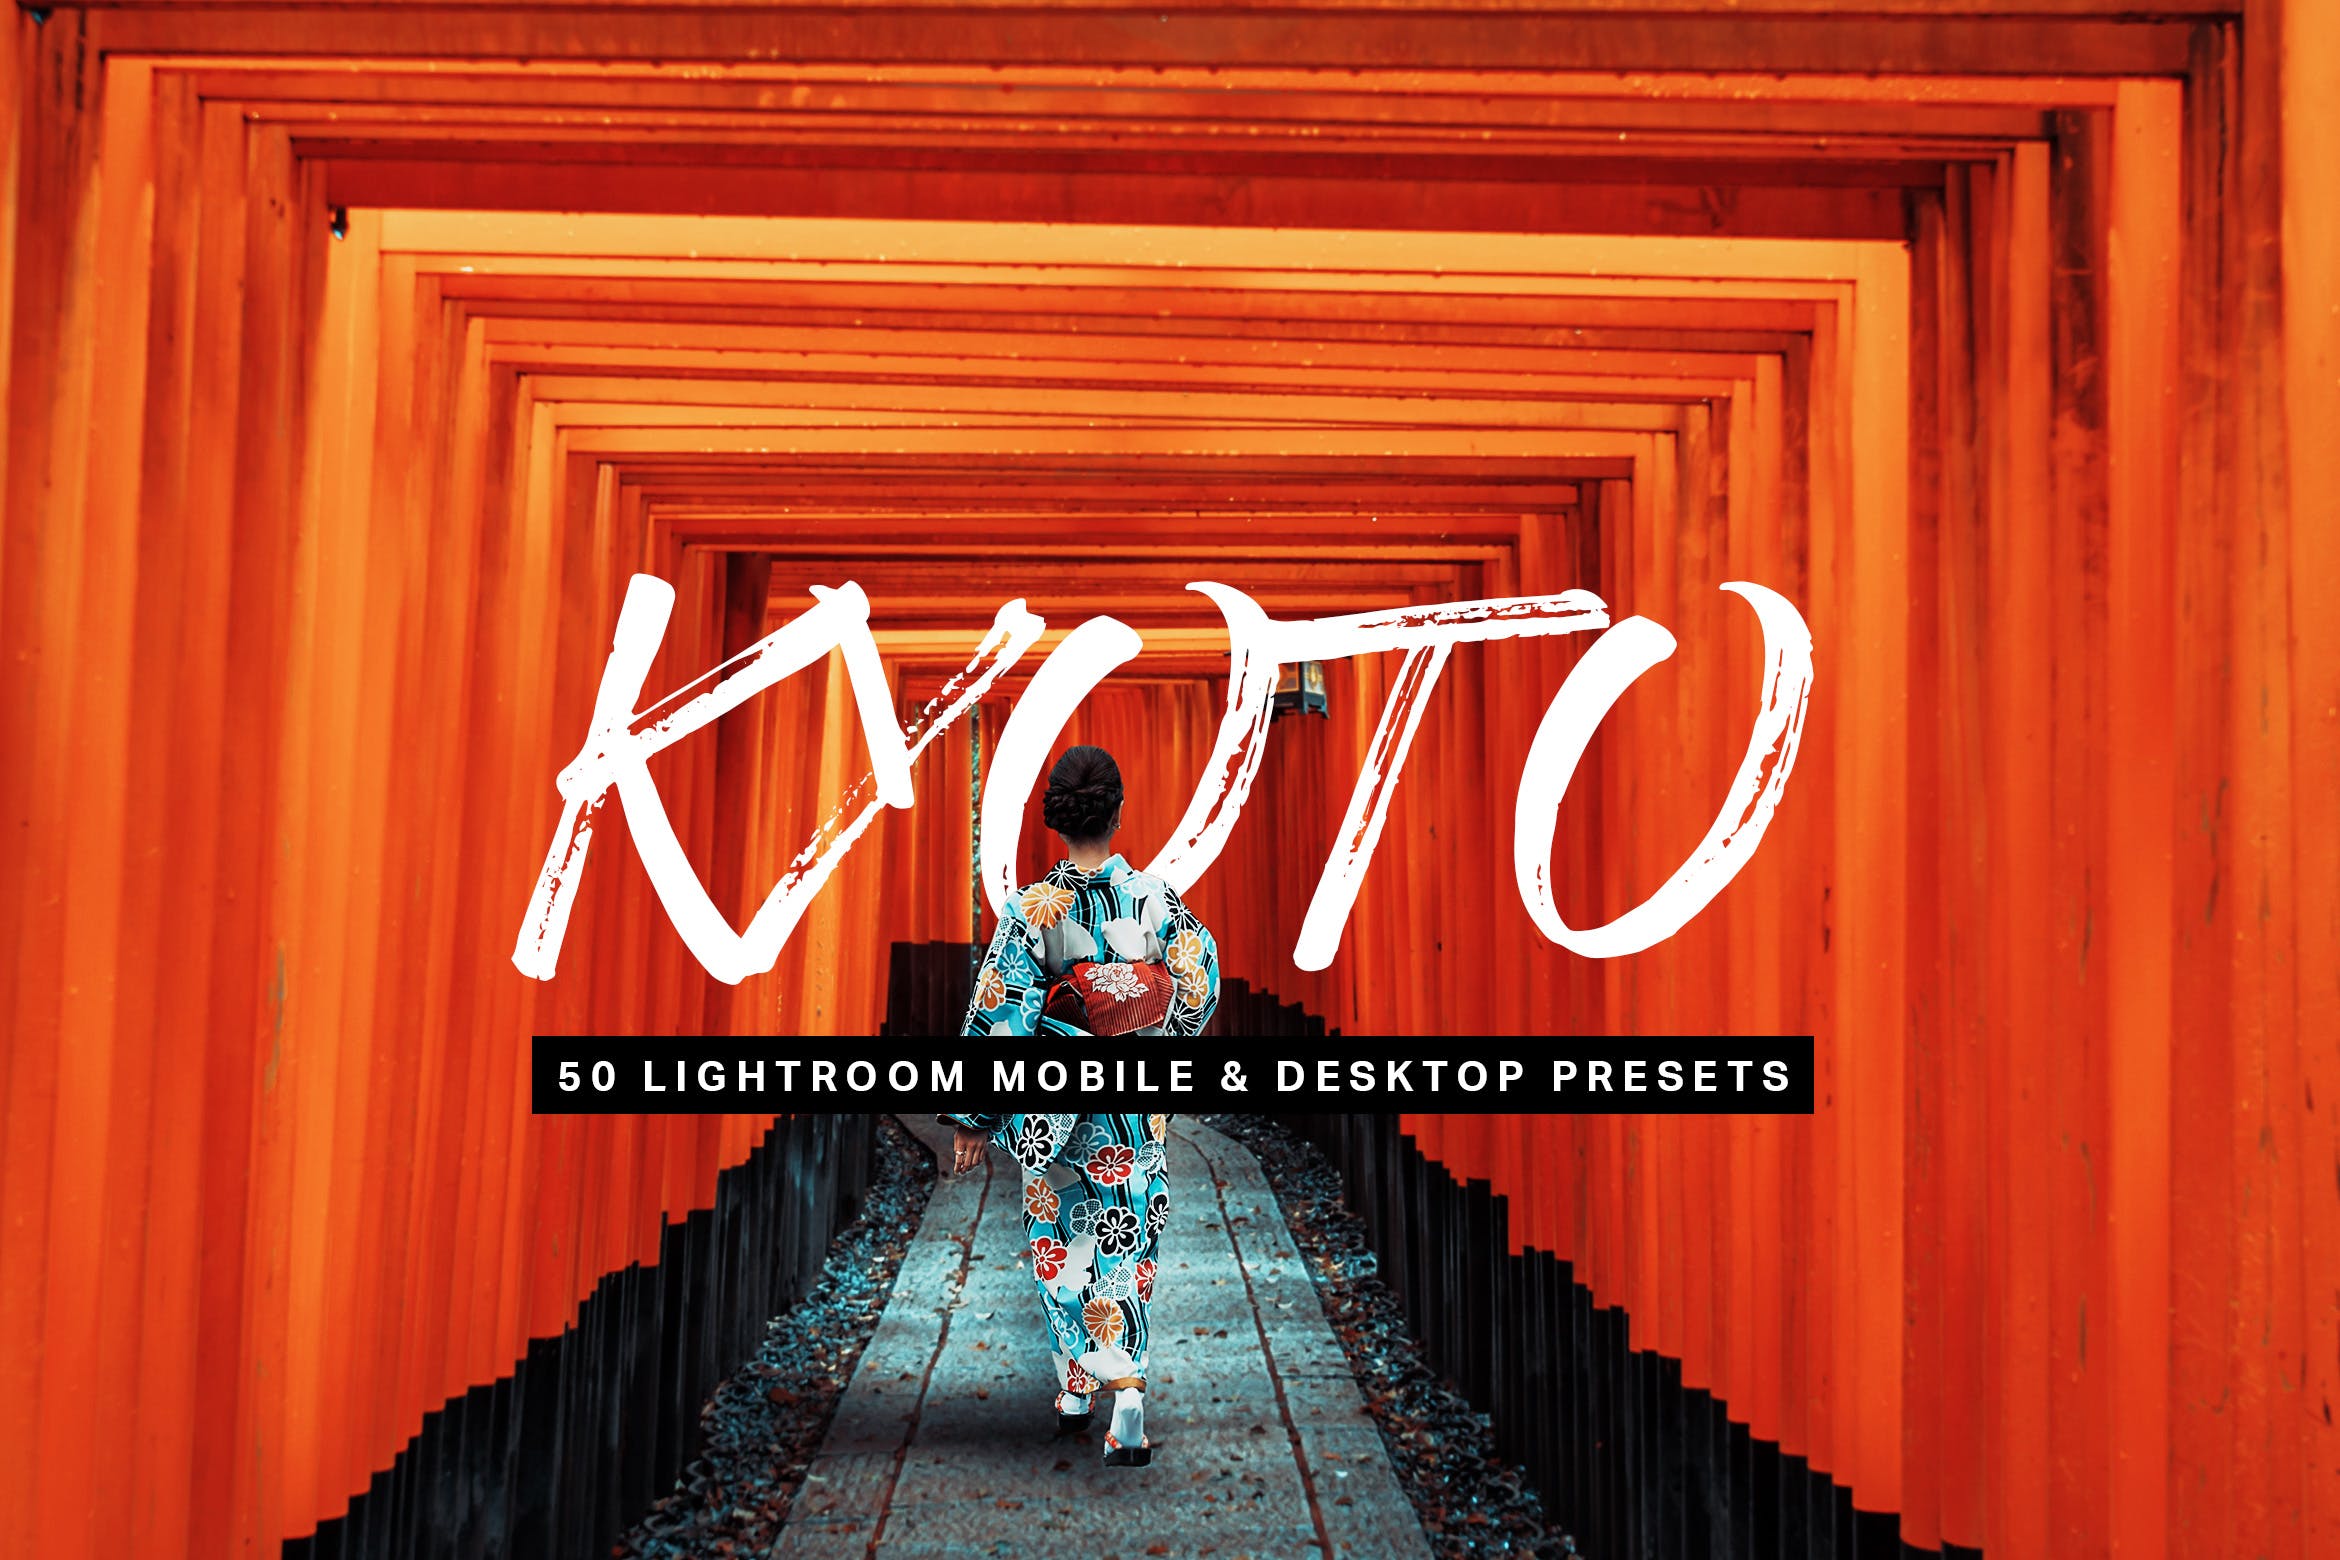 50款东京旅行照片调色滤镜第一素材精选LR预设 50 Kyoto Lightroom Presets and LUTs插图